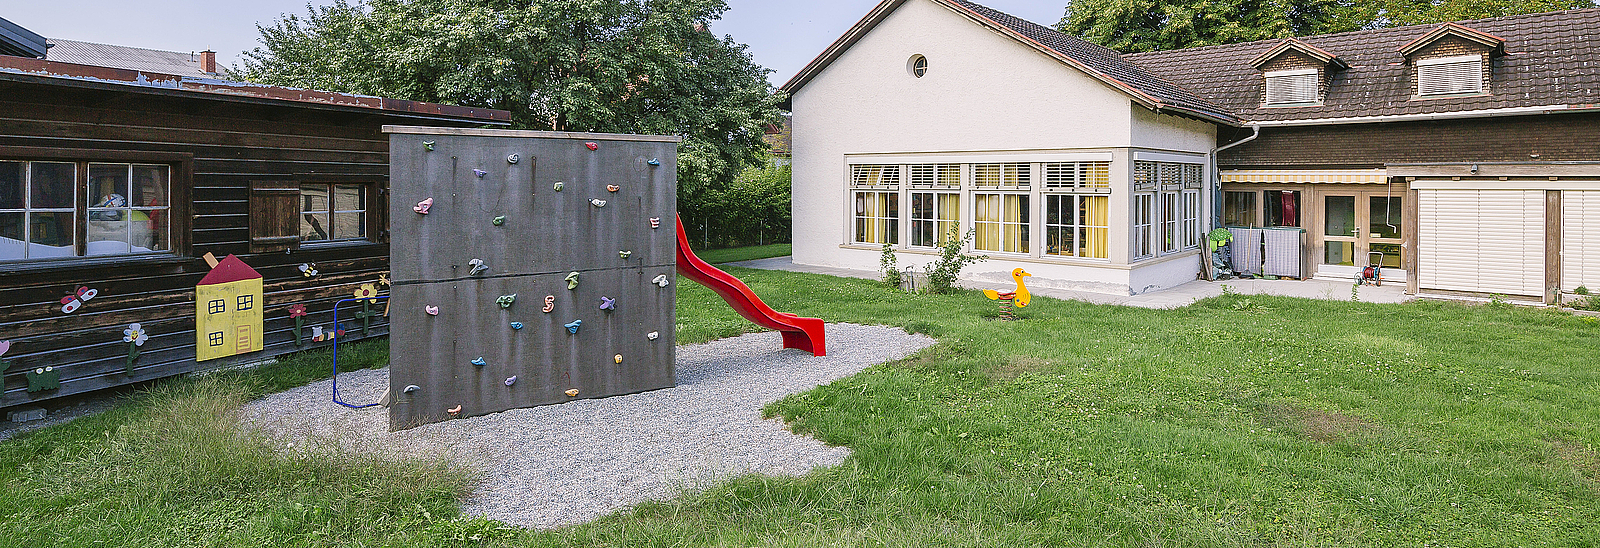 Stadt Feldkirch, Schulen, Kindergarten, Schwimmbad, oeffentliche Einrichtungen, Homepage, Gebaeude, Architektur